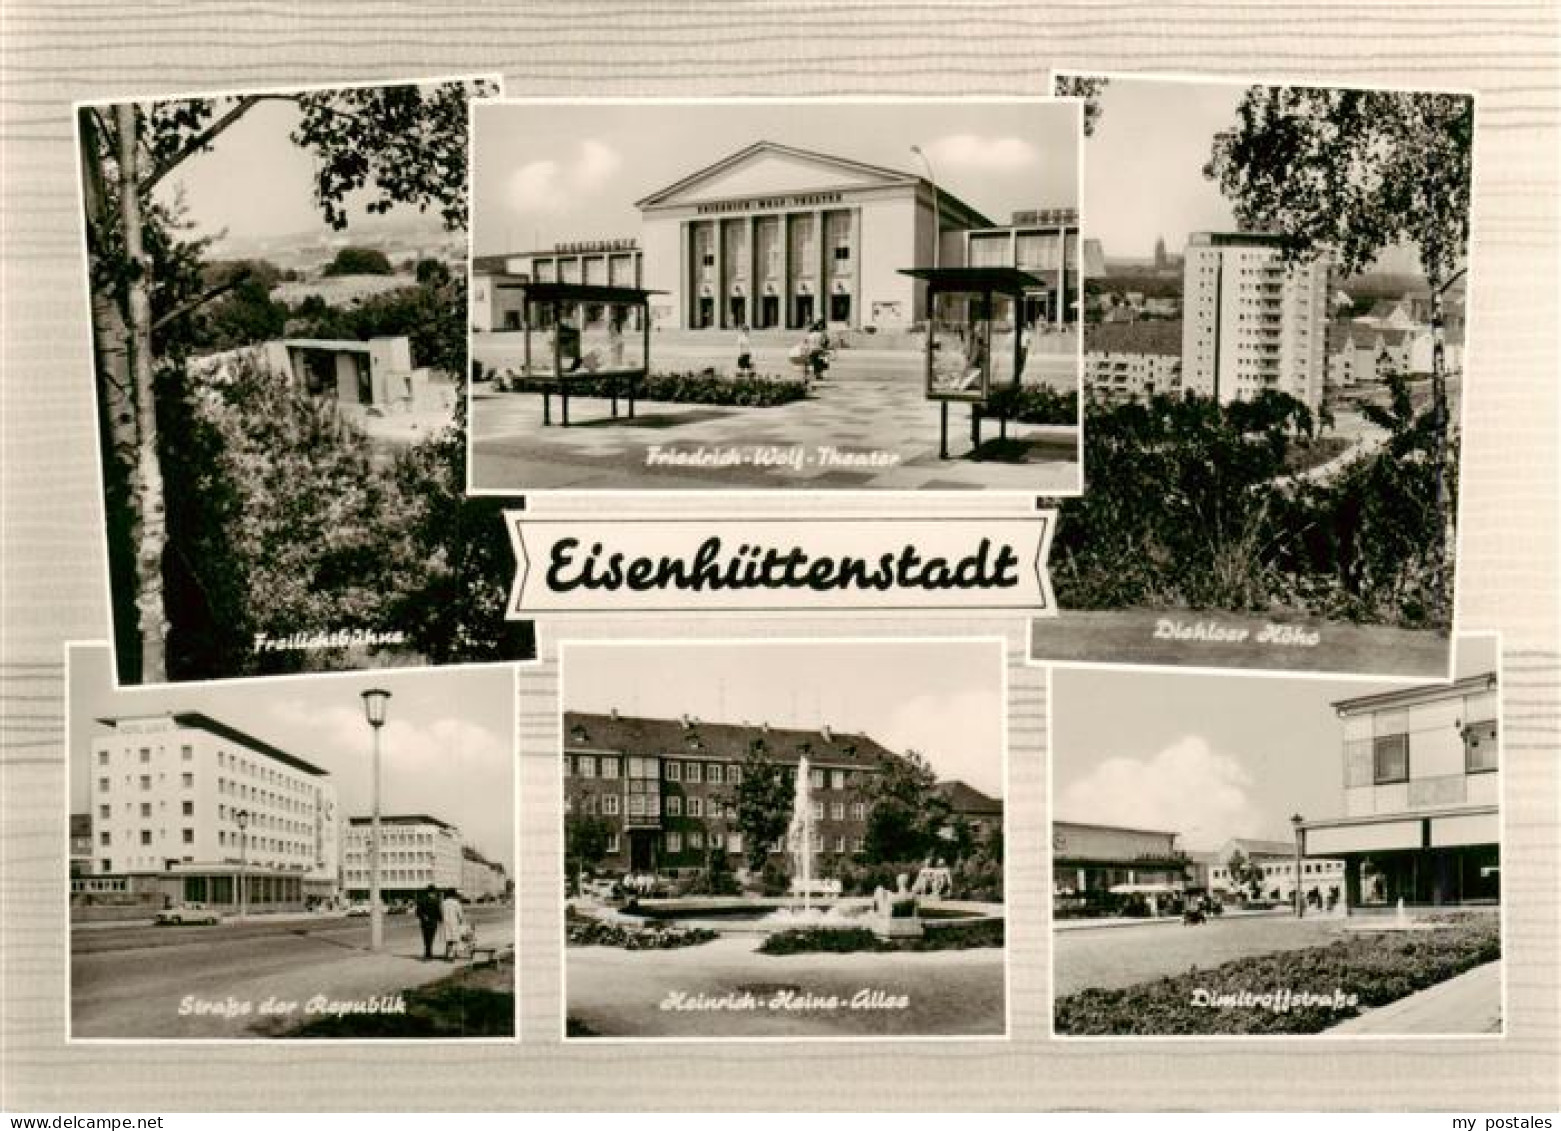 73947176 Eisenhuettenstadt Freilichtbuehne Friedrich Wolf Theater Strasse Der Re - Eisenhuettenstadt